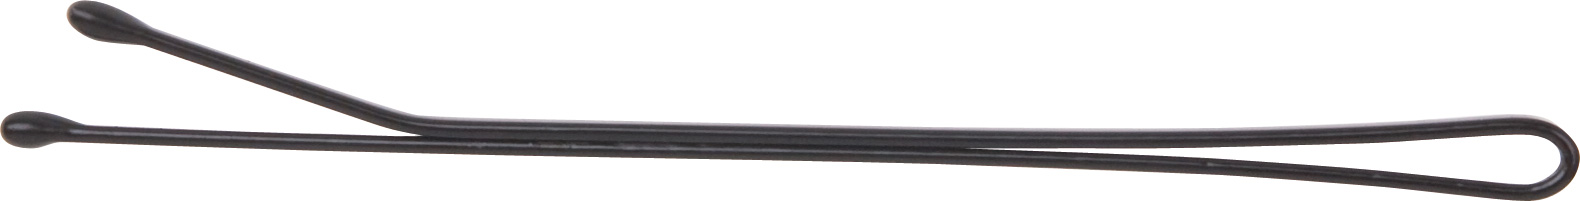 DEWAL PROFESSIONAL Невидимки черные, прямые 70 мм, 40 шт/уп 